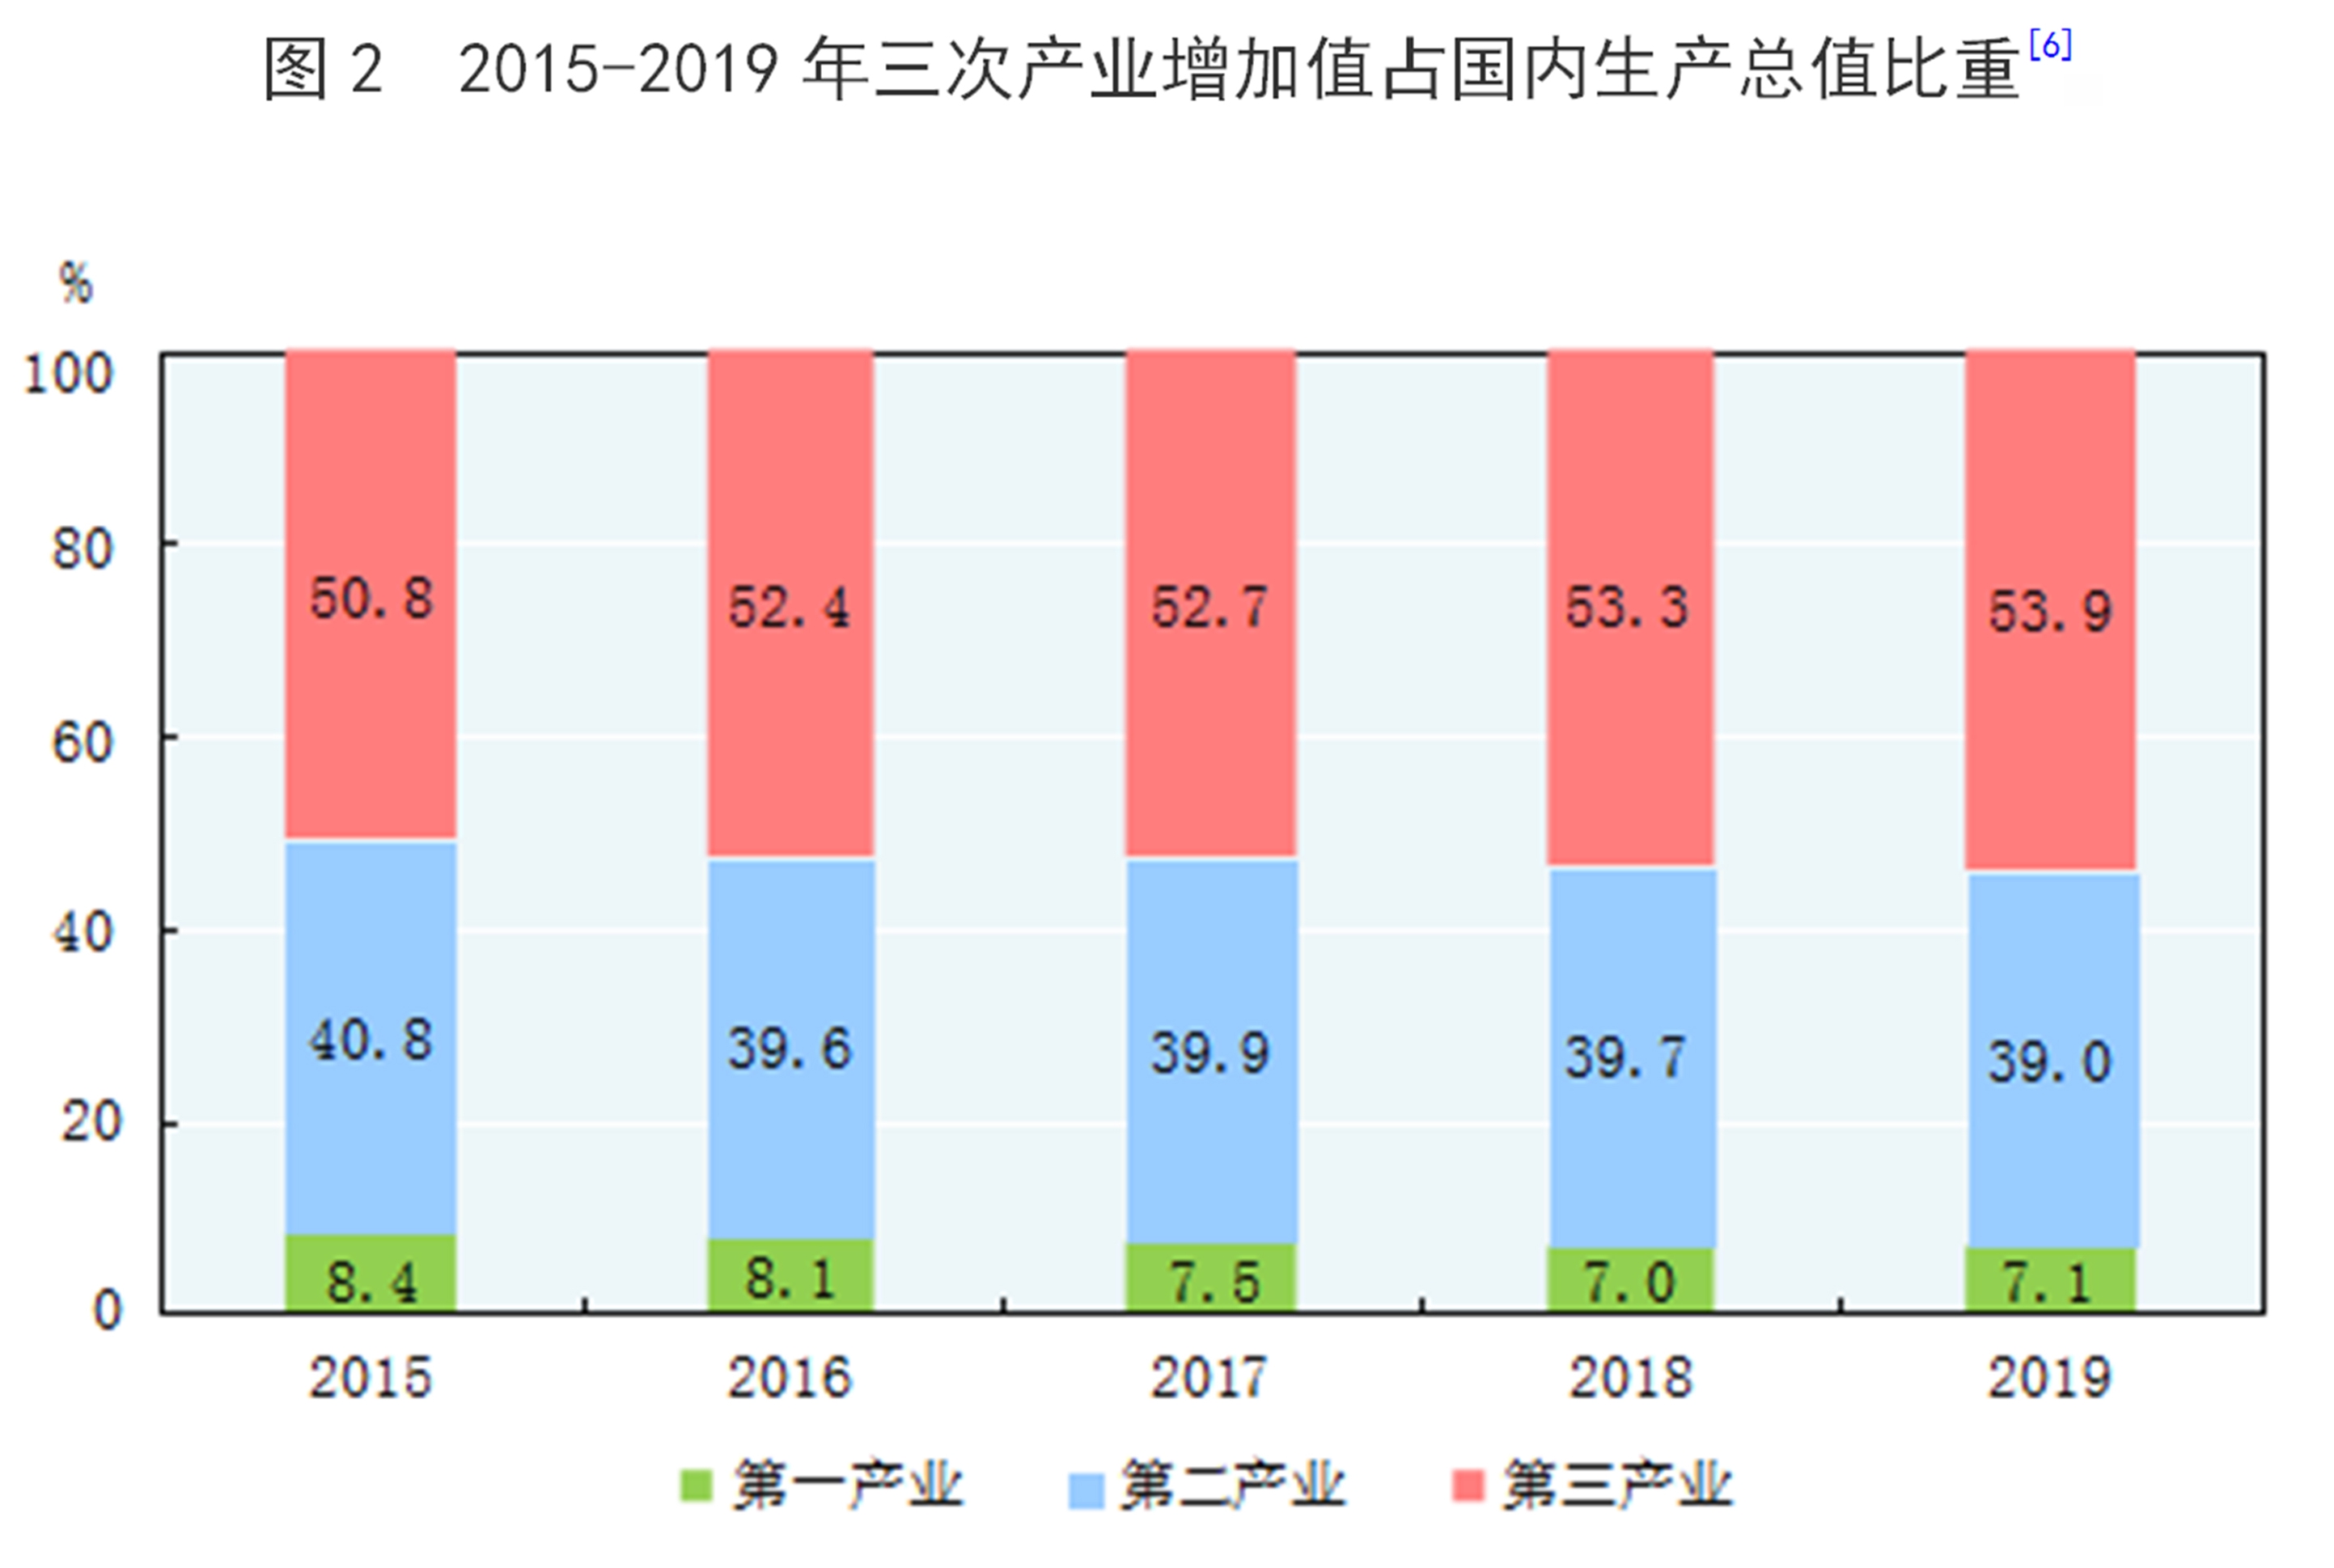 中国三大产业比重2019图片